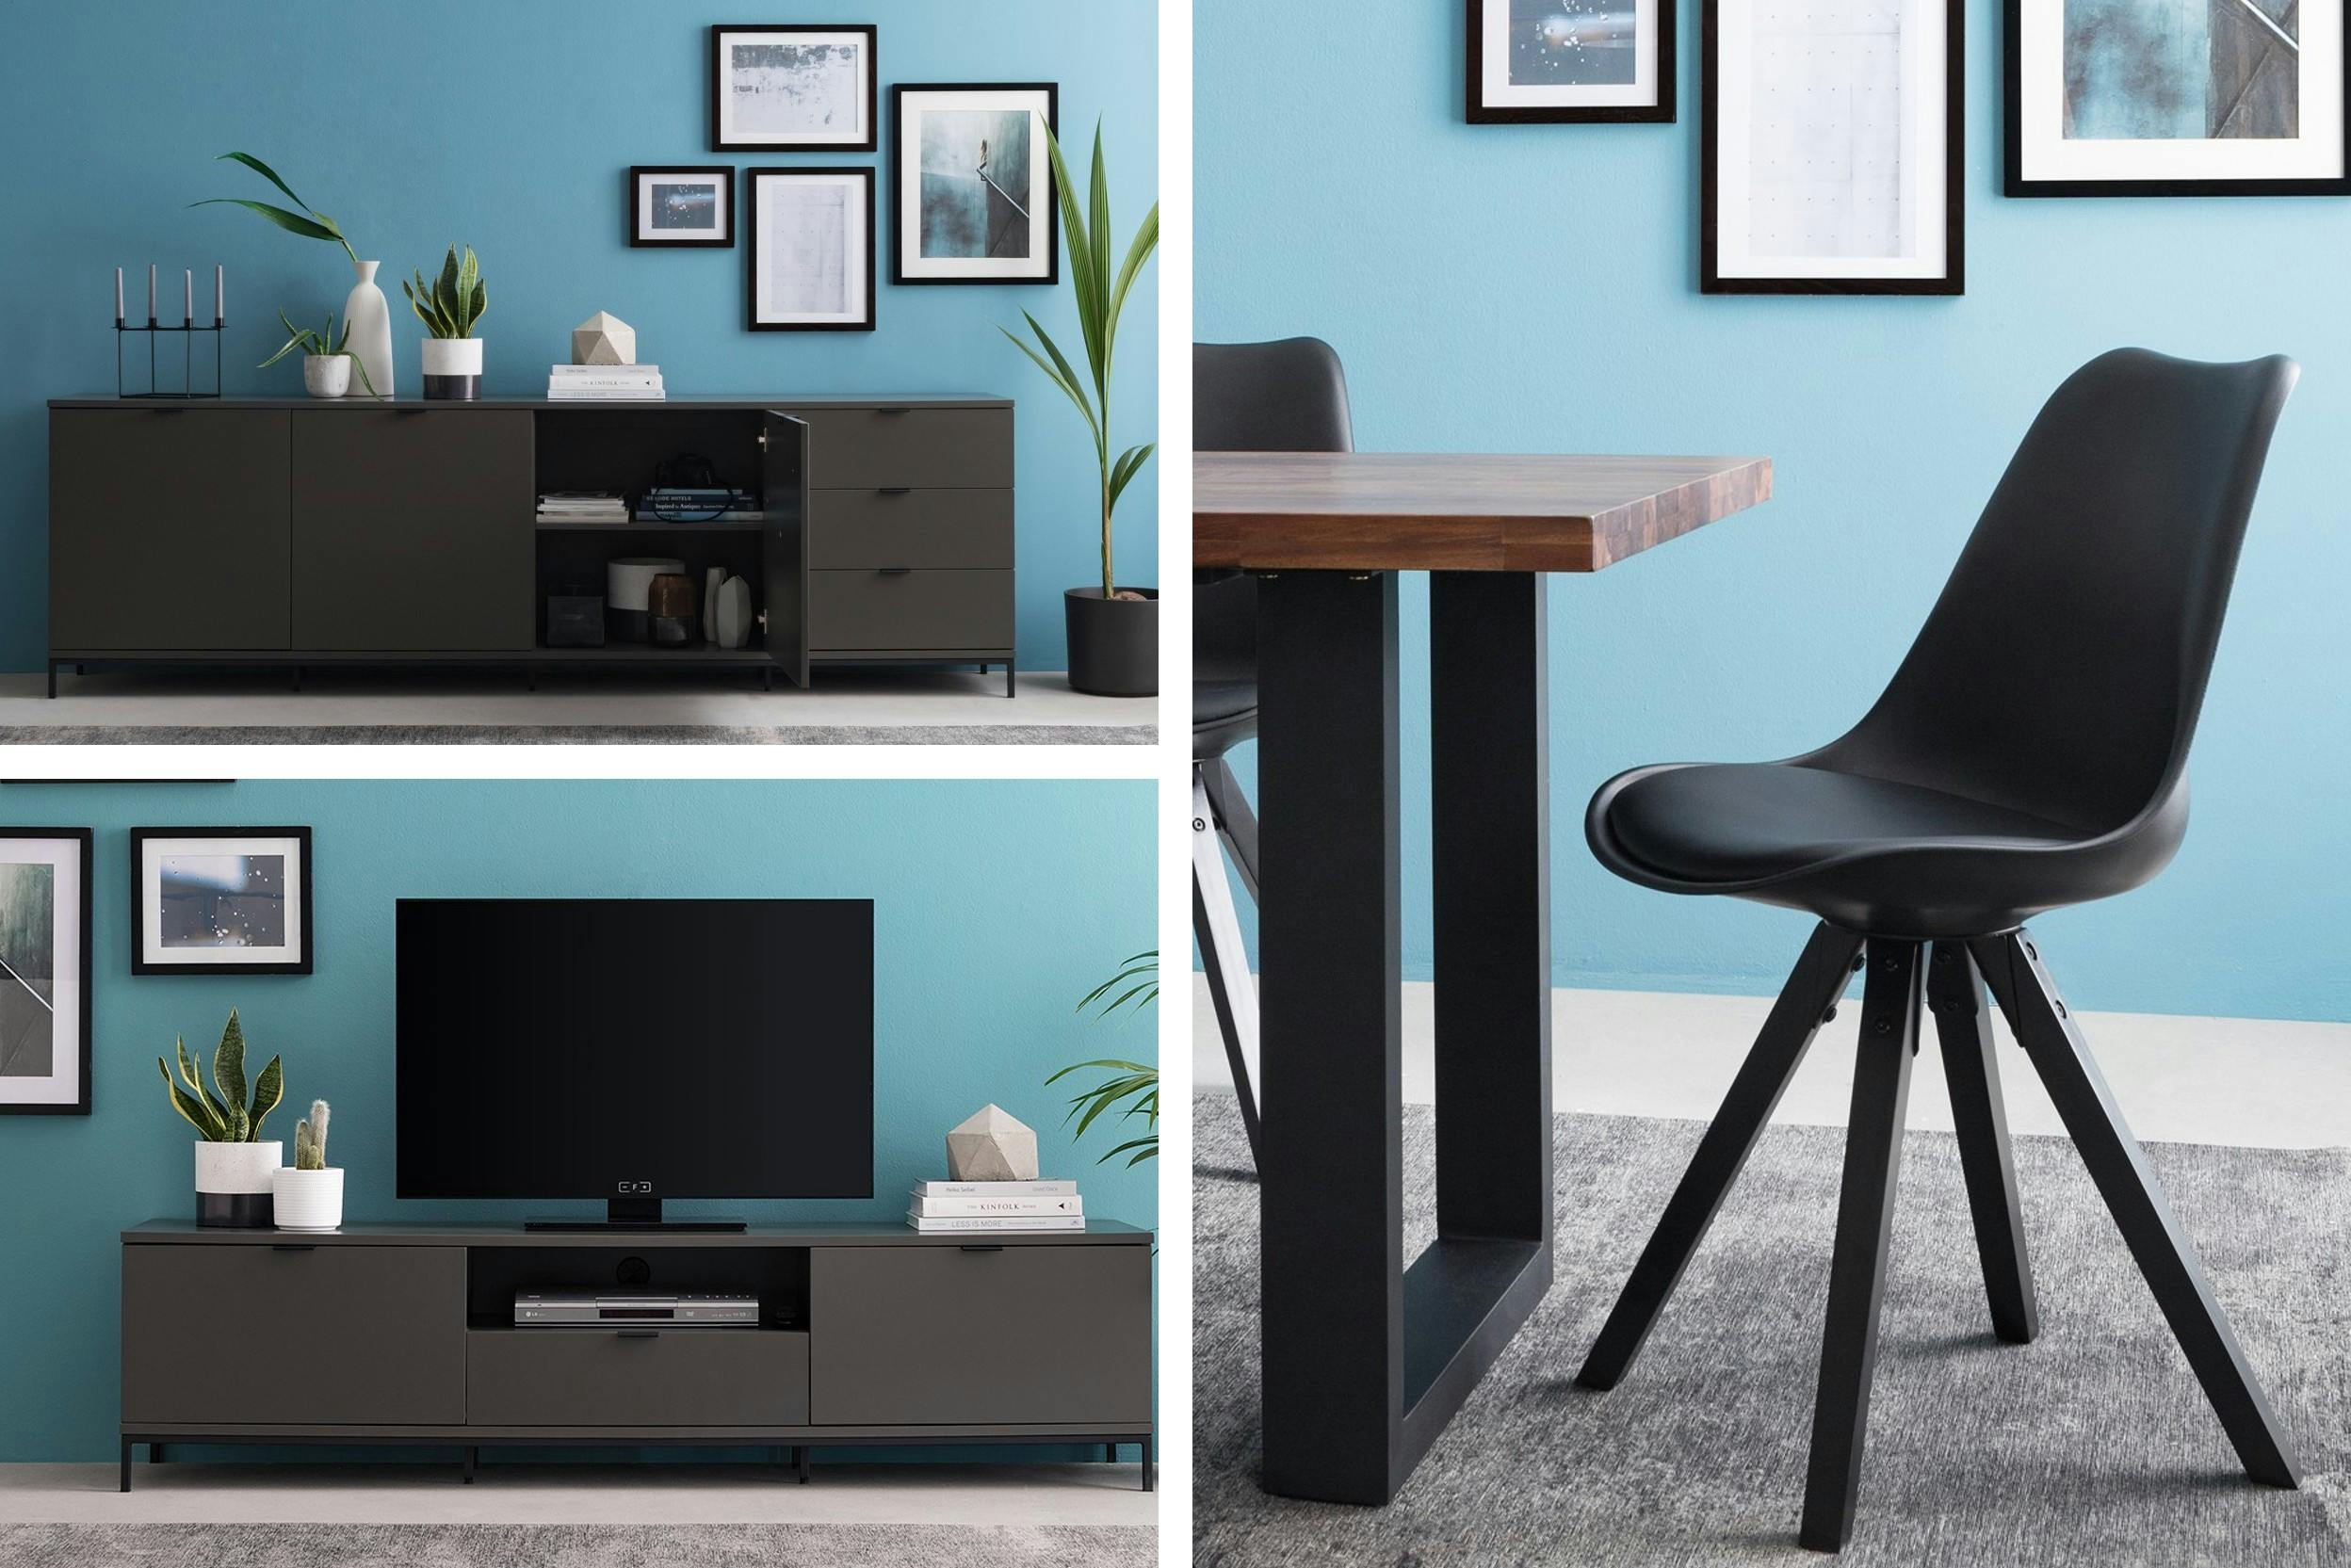 Schwarzes Sideboard und TV-Möbel sowie schwarzer Esszimmerstuhl vor leuchtend blauer Wand